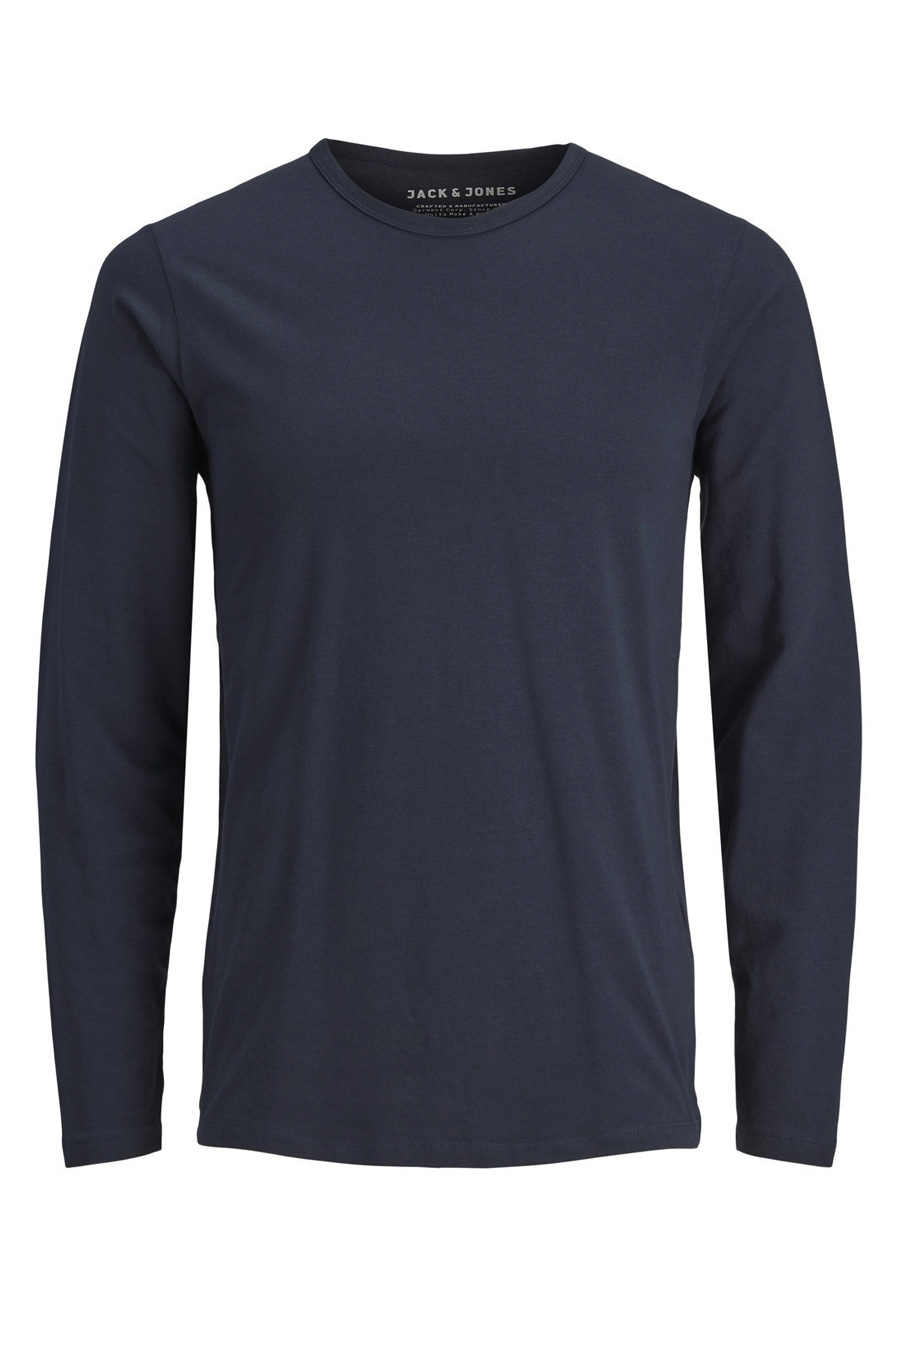 T-krekls ar garām rokām JACK & JONES 12059220-NAVY-BLUE